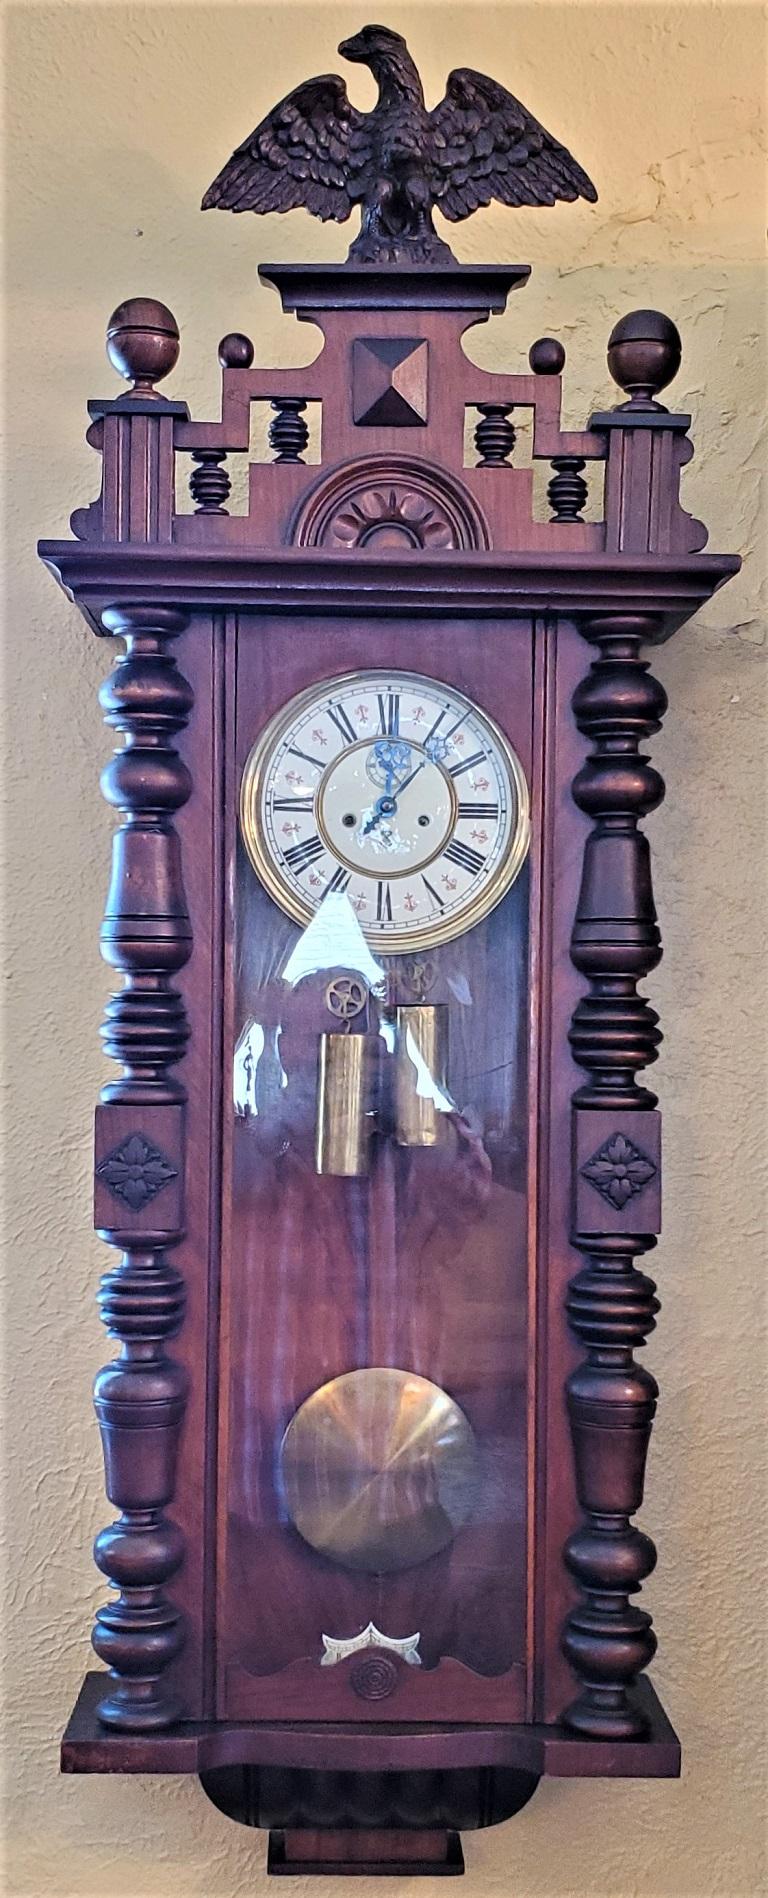 Nous vous présentons une magnifique horloge murale viennoise Gustav Becker du 19e siècle.

Fabriqué par le célèbre horloger Gustav Becker vers 1880 en Allemagne.

Le Condit est en bon état d'origine et intact.

Le couvercle amovible est surmonté